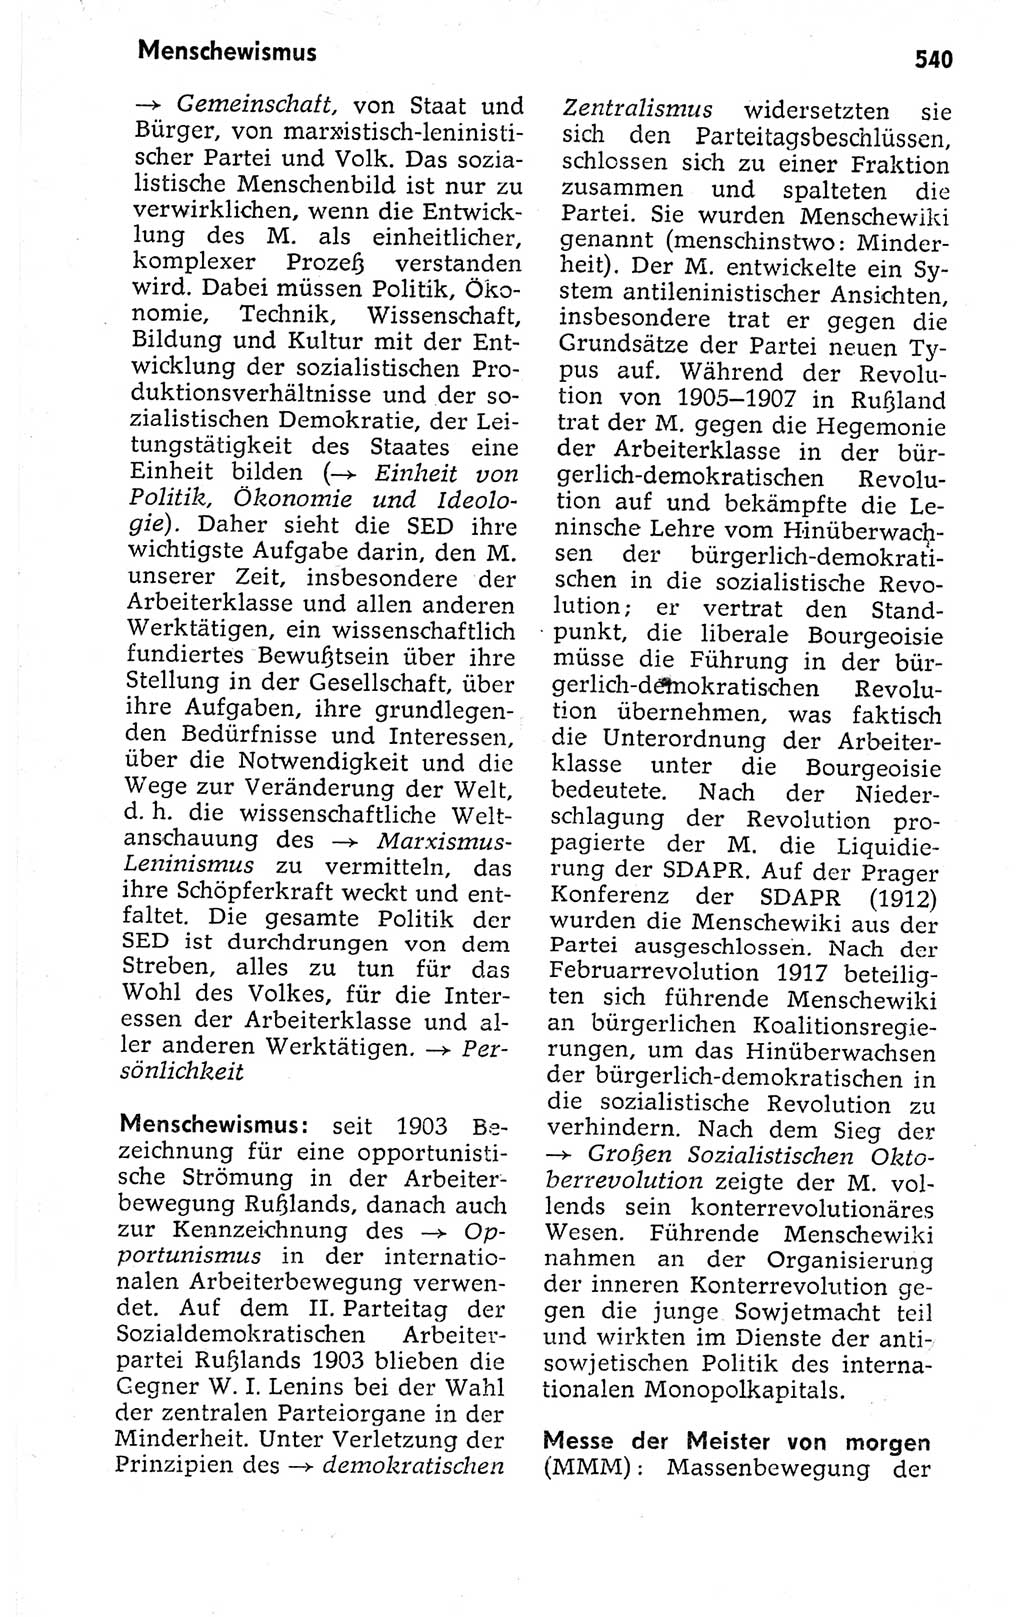 Kleines politisches Wörterbuch [Deutsche Demokratische Republik (DDR)] 1973, Seite 540 (Kl. pol. Wb. DDR 1973, S. 540)